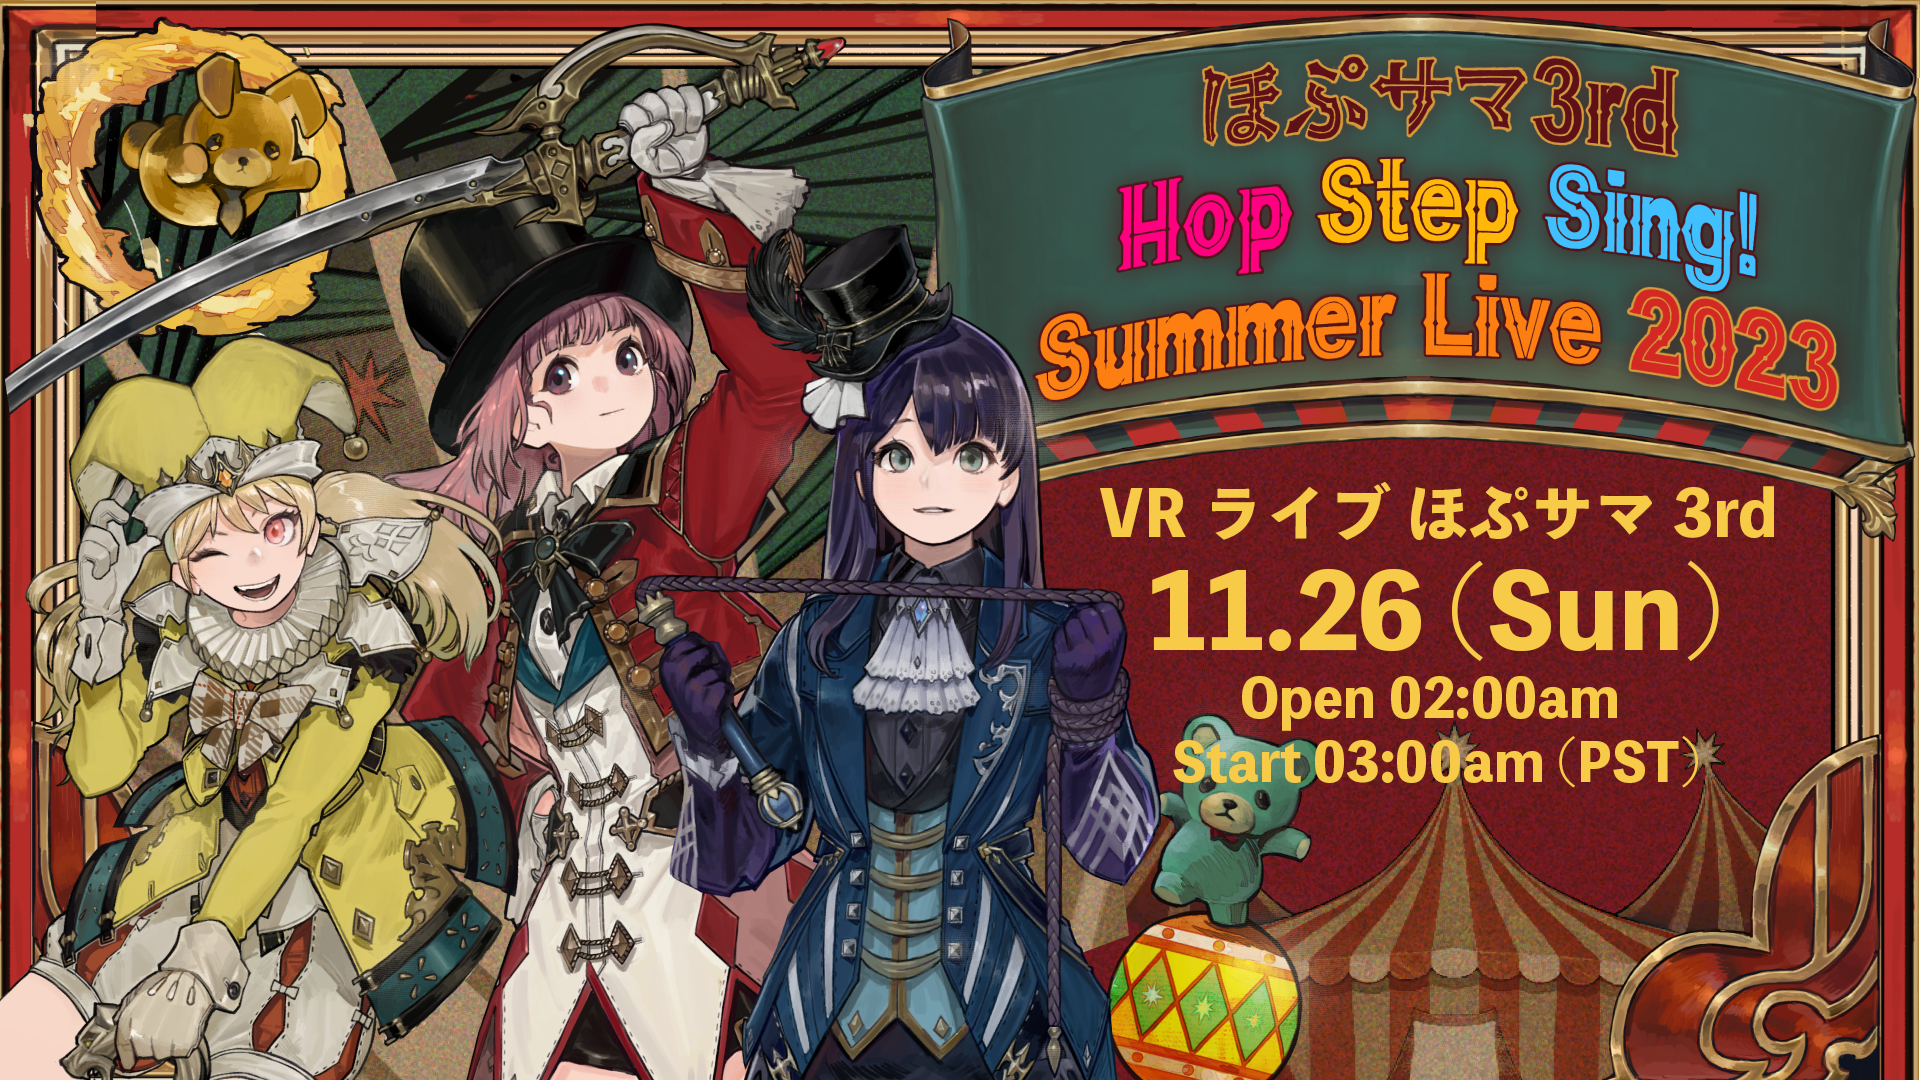 Hop Step Sing! VR Live Hop Summer 3rd